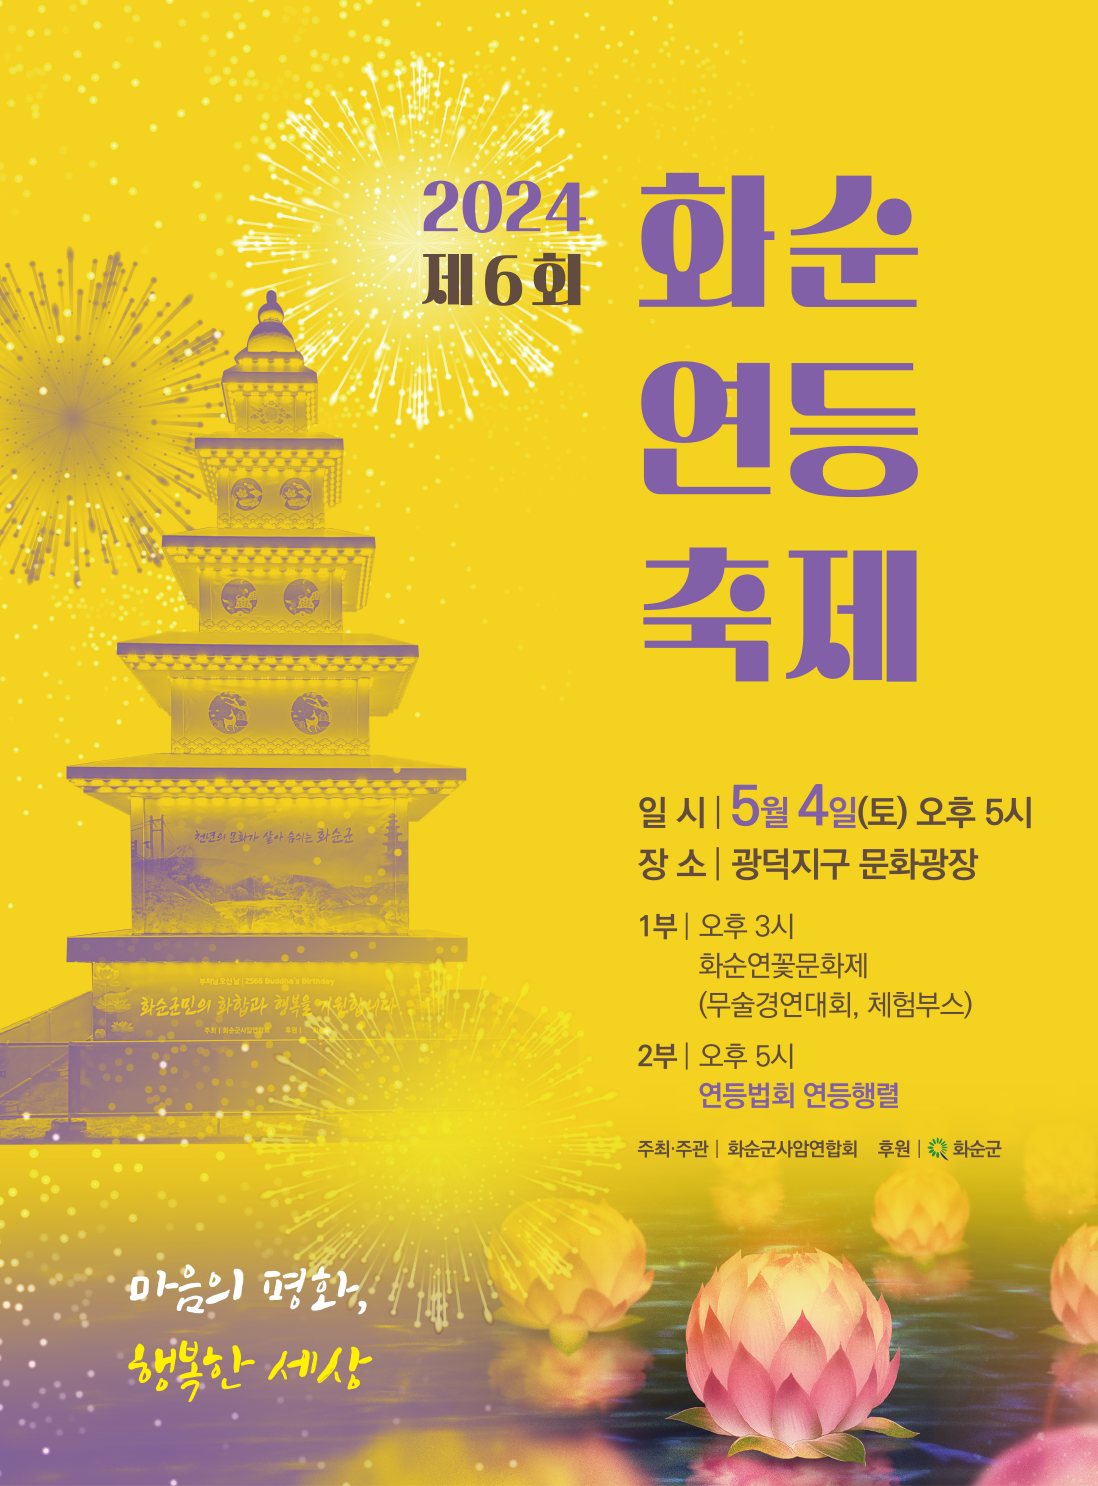 화순군, 광덕지구 문화광장서 제6회 연등축제 개최